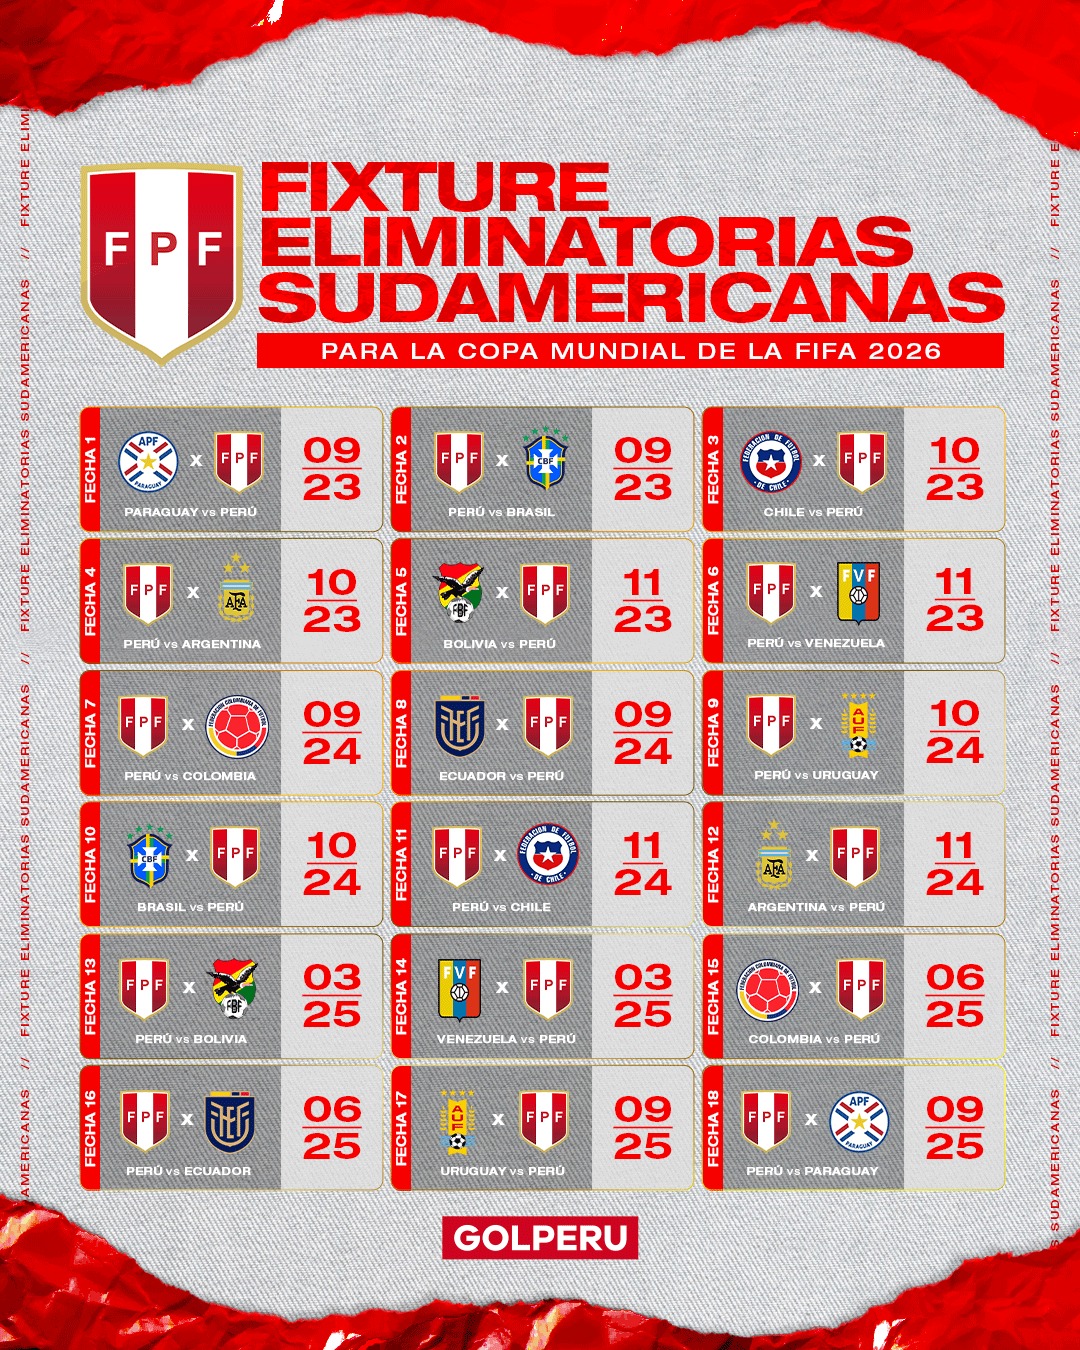 Fixture de la selección peruana para las Eliminatorias Sudamericanas